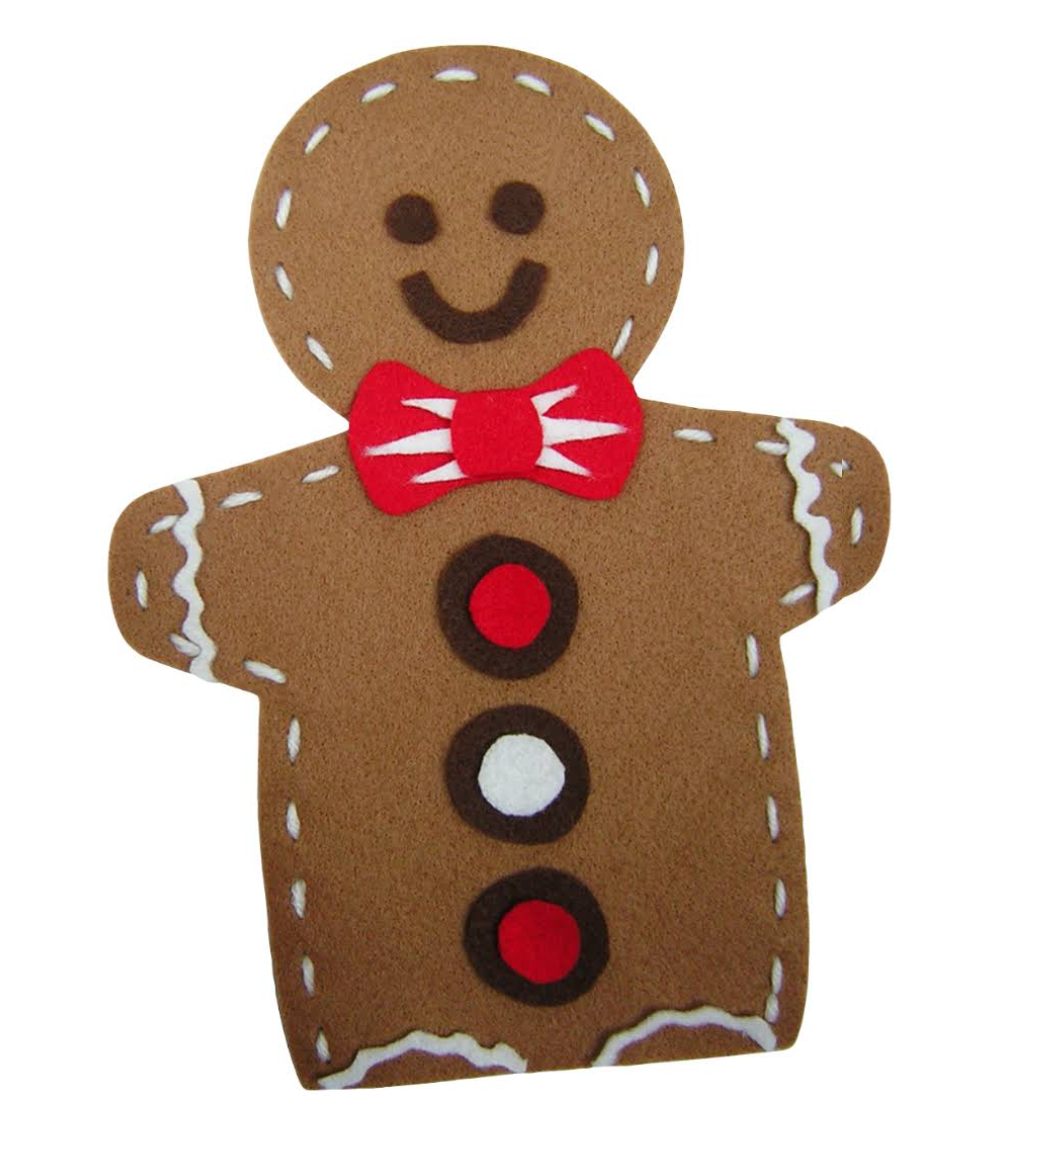 Reindeer / Gingerbread Man Puppet Pack Felt Craft Kit - Makes 30